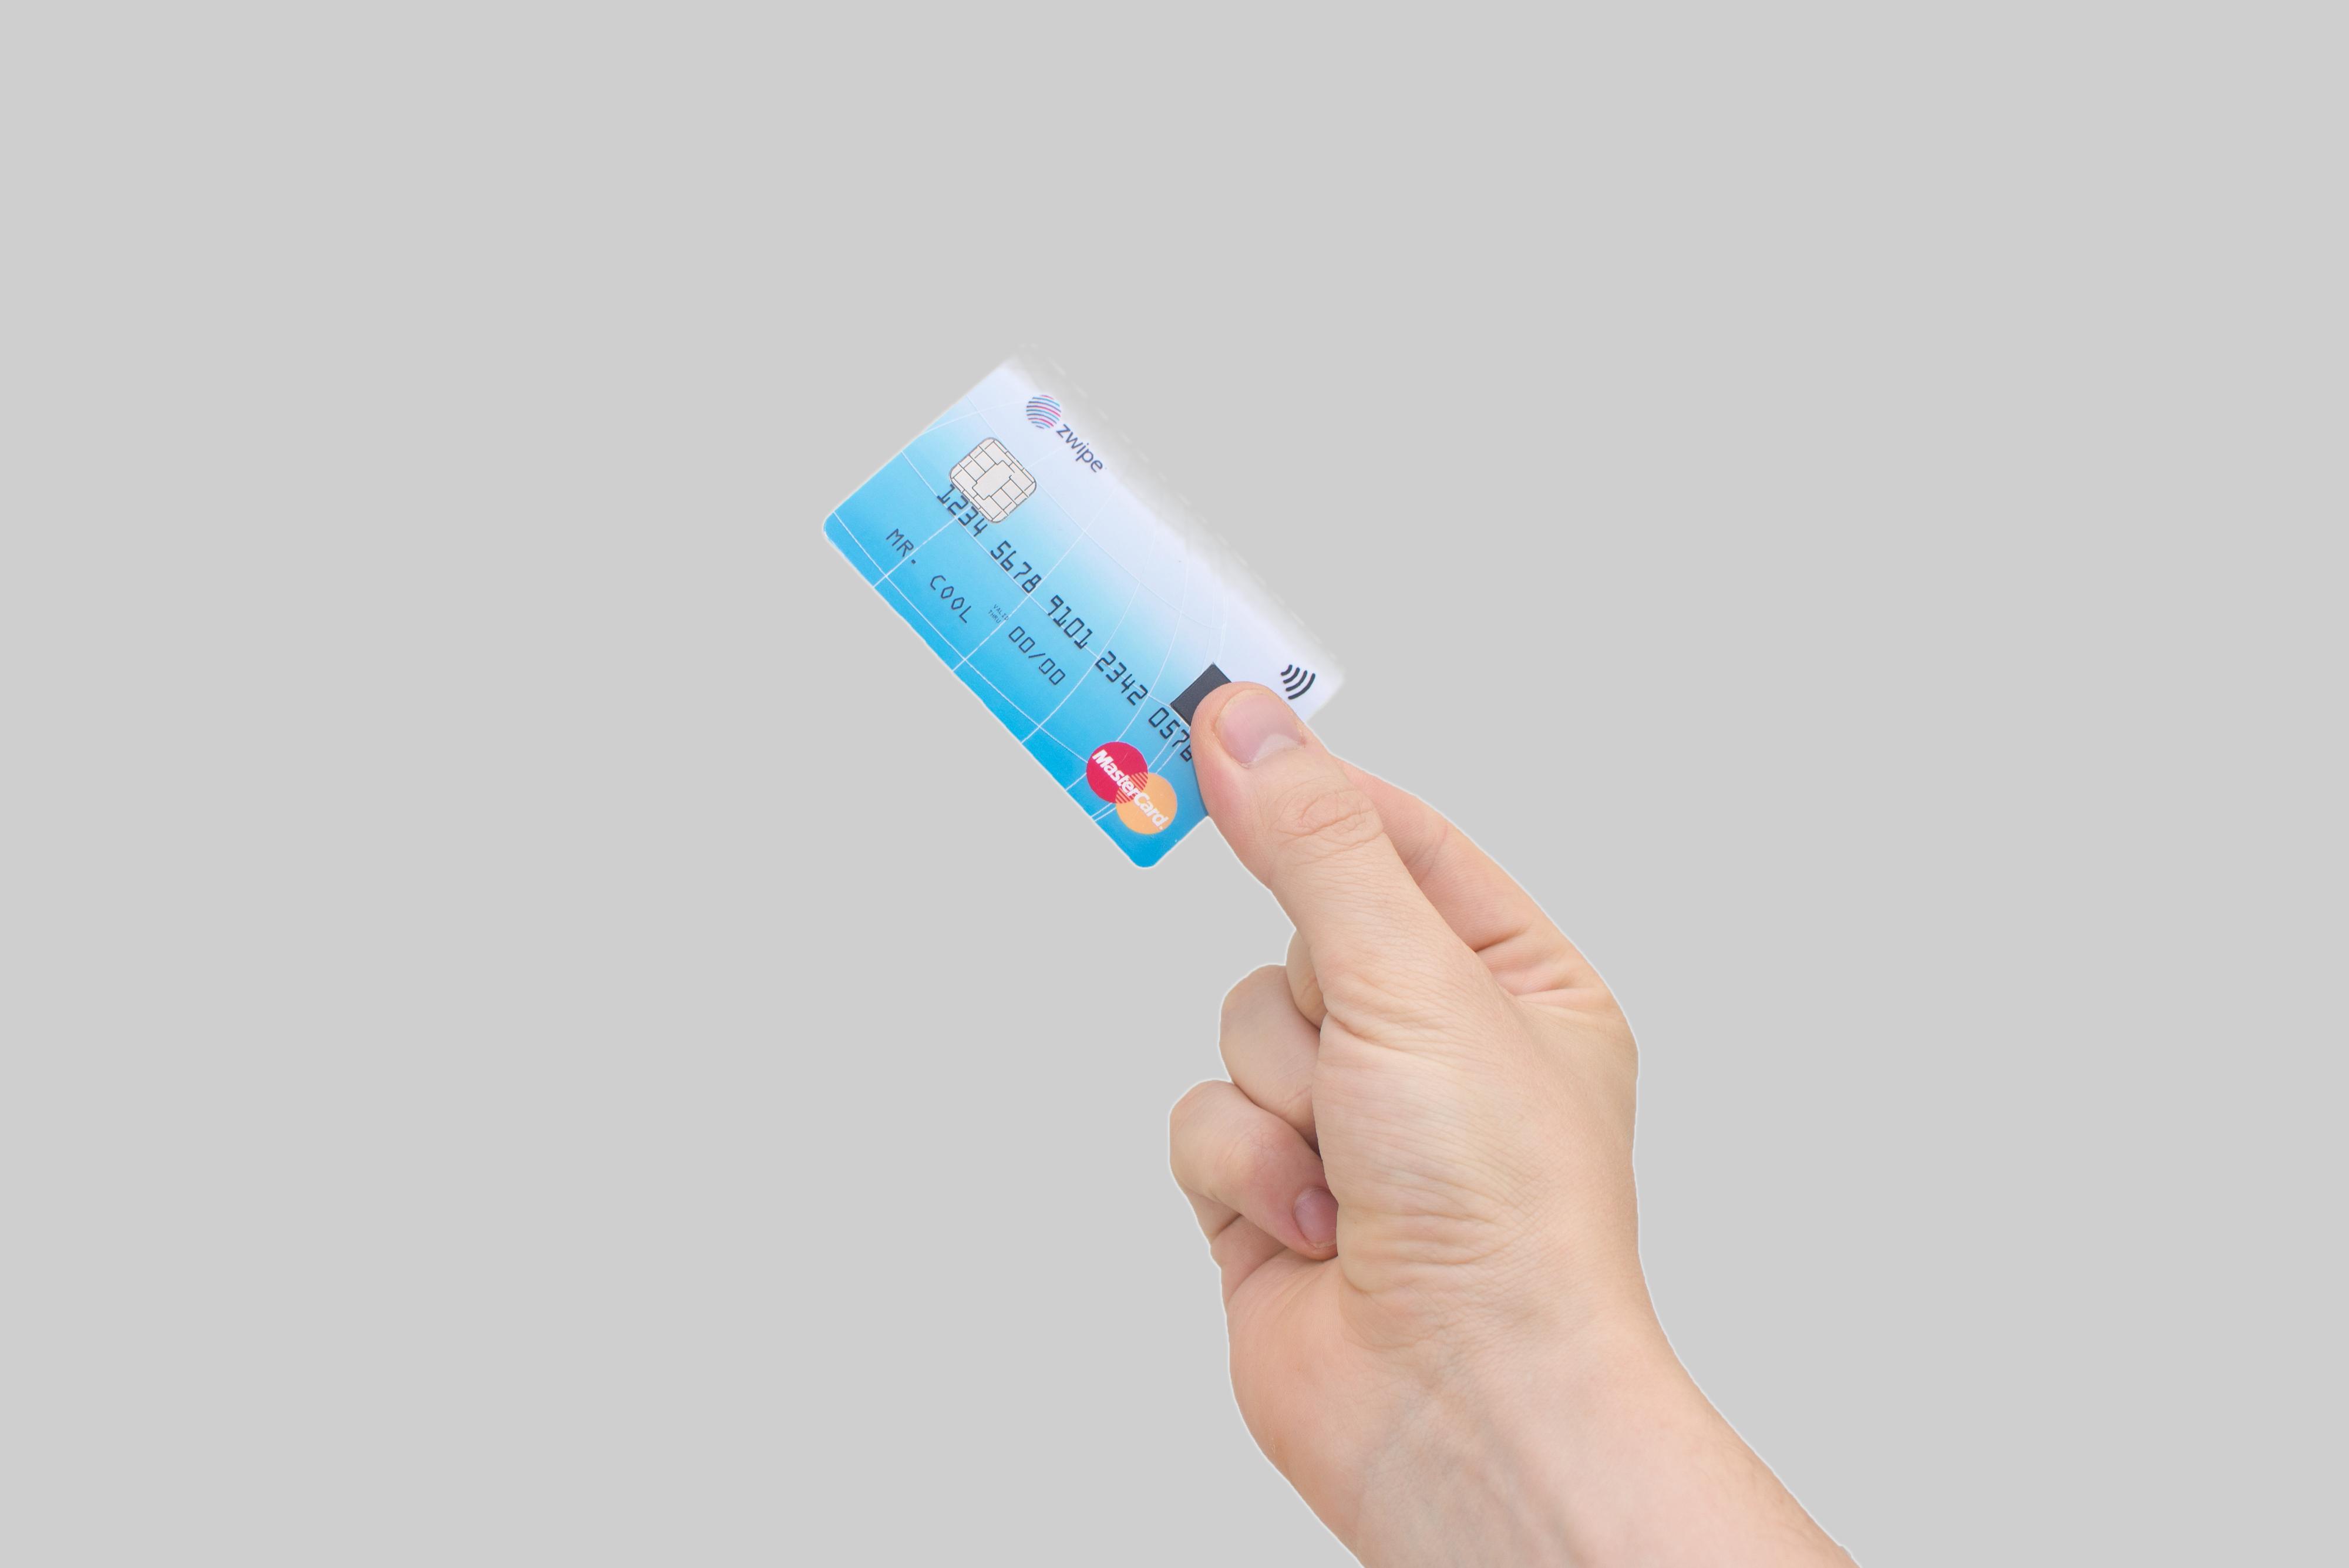 Det norskutviklede betalingskortet fra Zwipe er blant løsningene som kanskje ikke er så sikre lenger.Foto: Zwipe